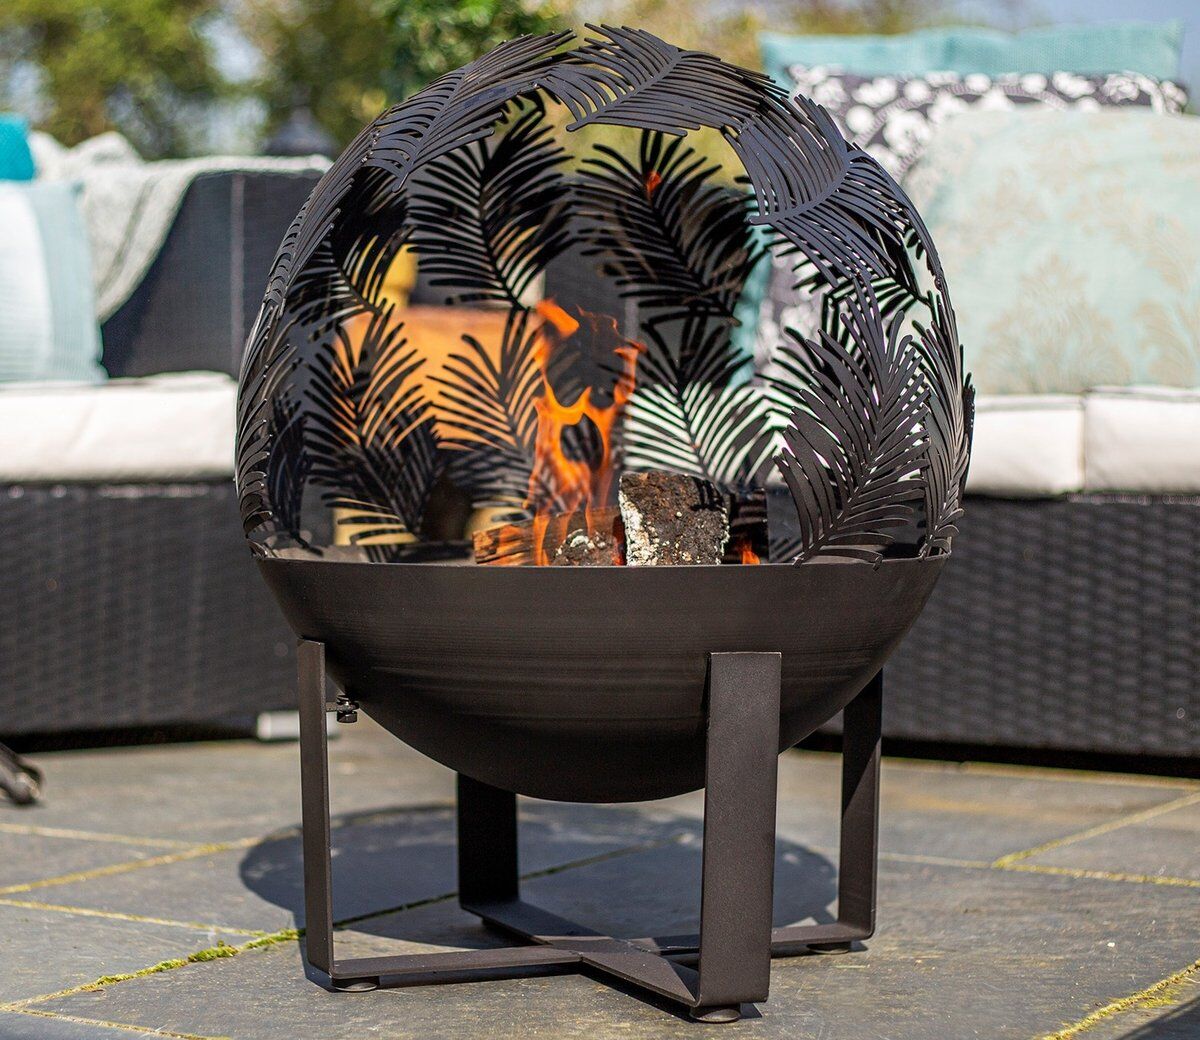 La Globe mit Black | Hacienda Forest Feuerkugel Design